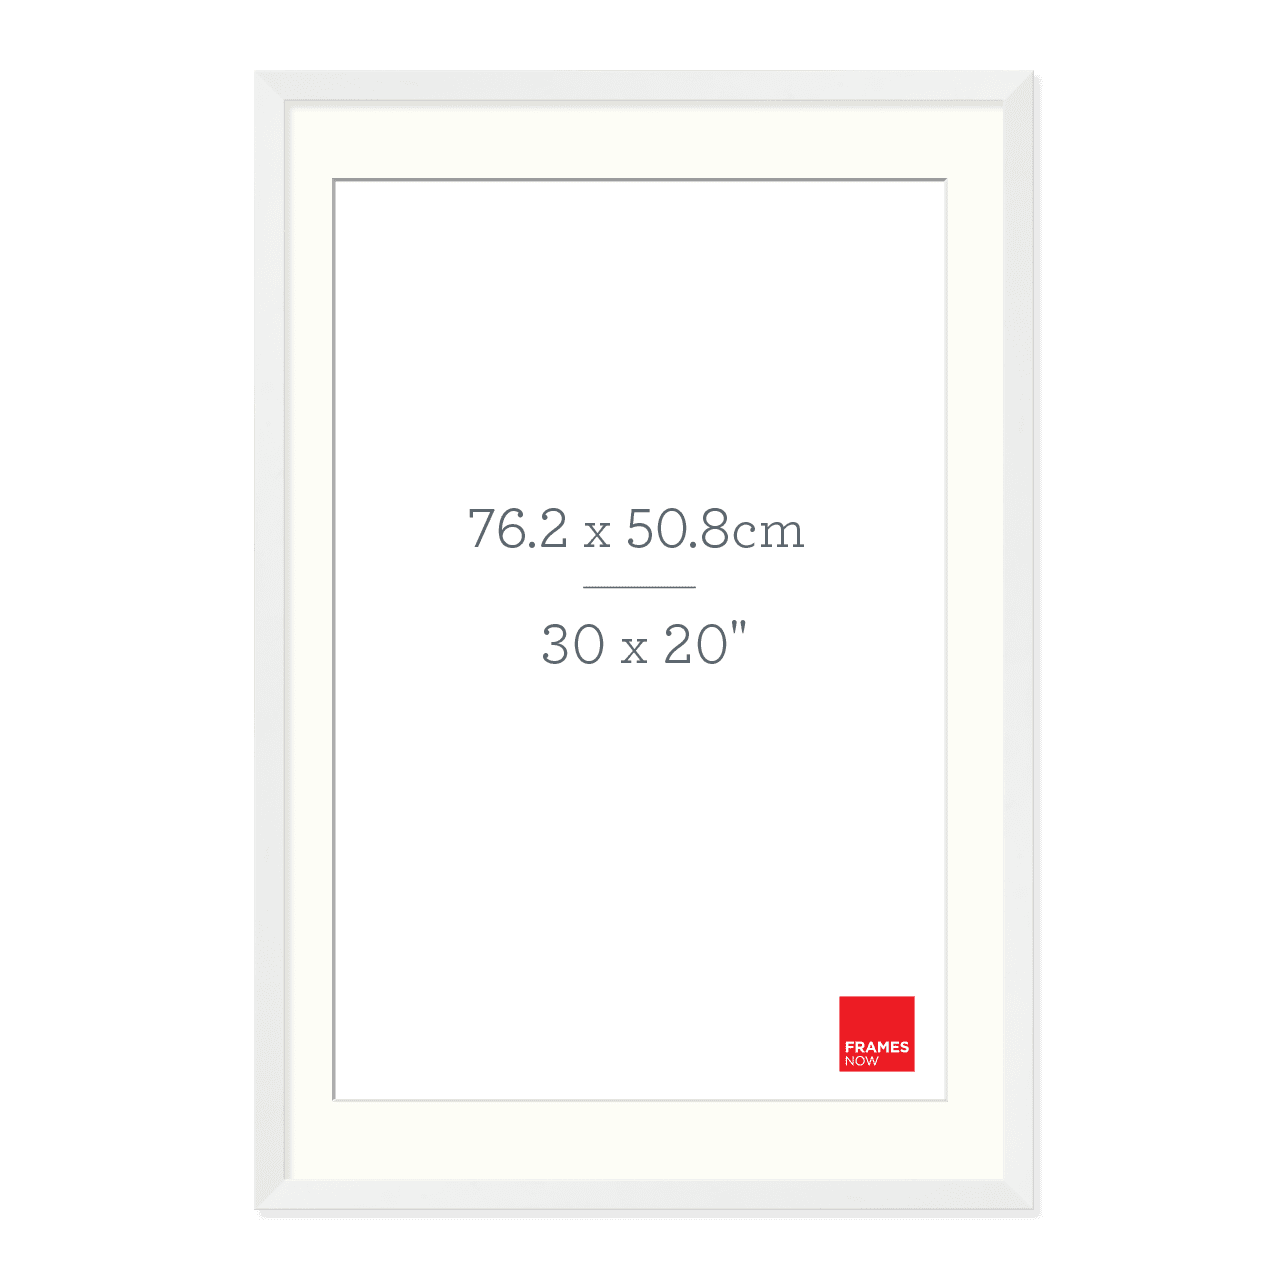 Premium Matte White Box Picture Frame with Matboard for 76.2 x 50.8cm Artwork